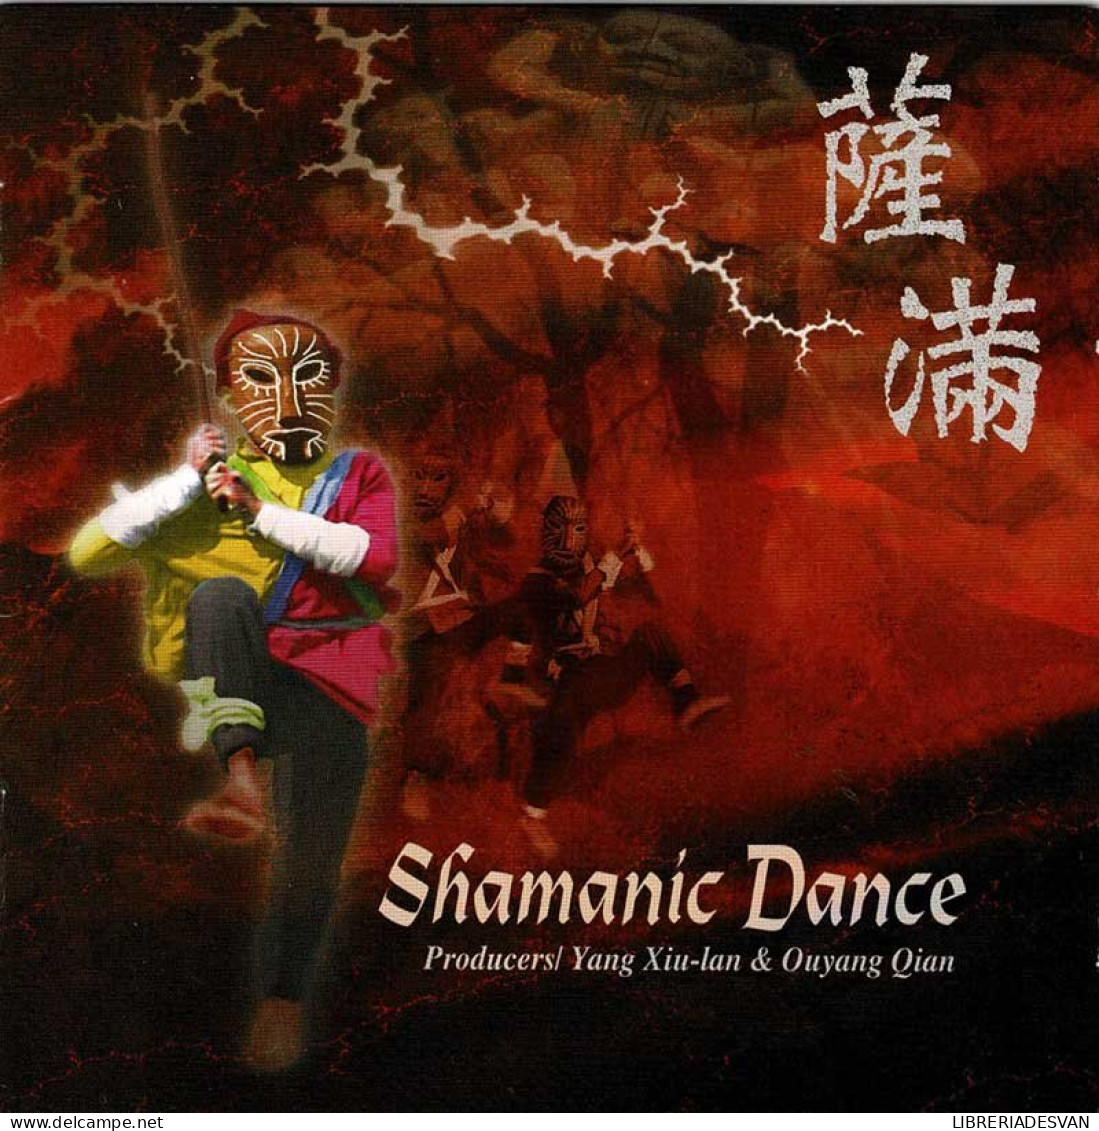 Yang Xiu-lan & Ouyang Qian - Shamanic Dance. CD - New Age